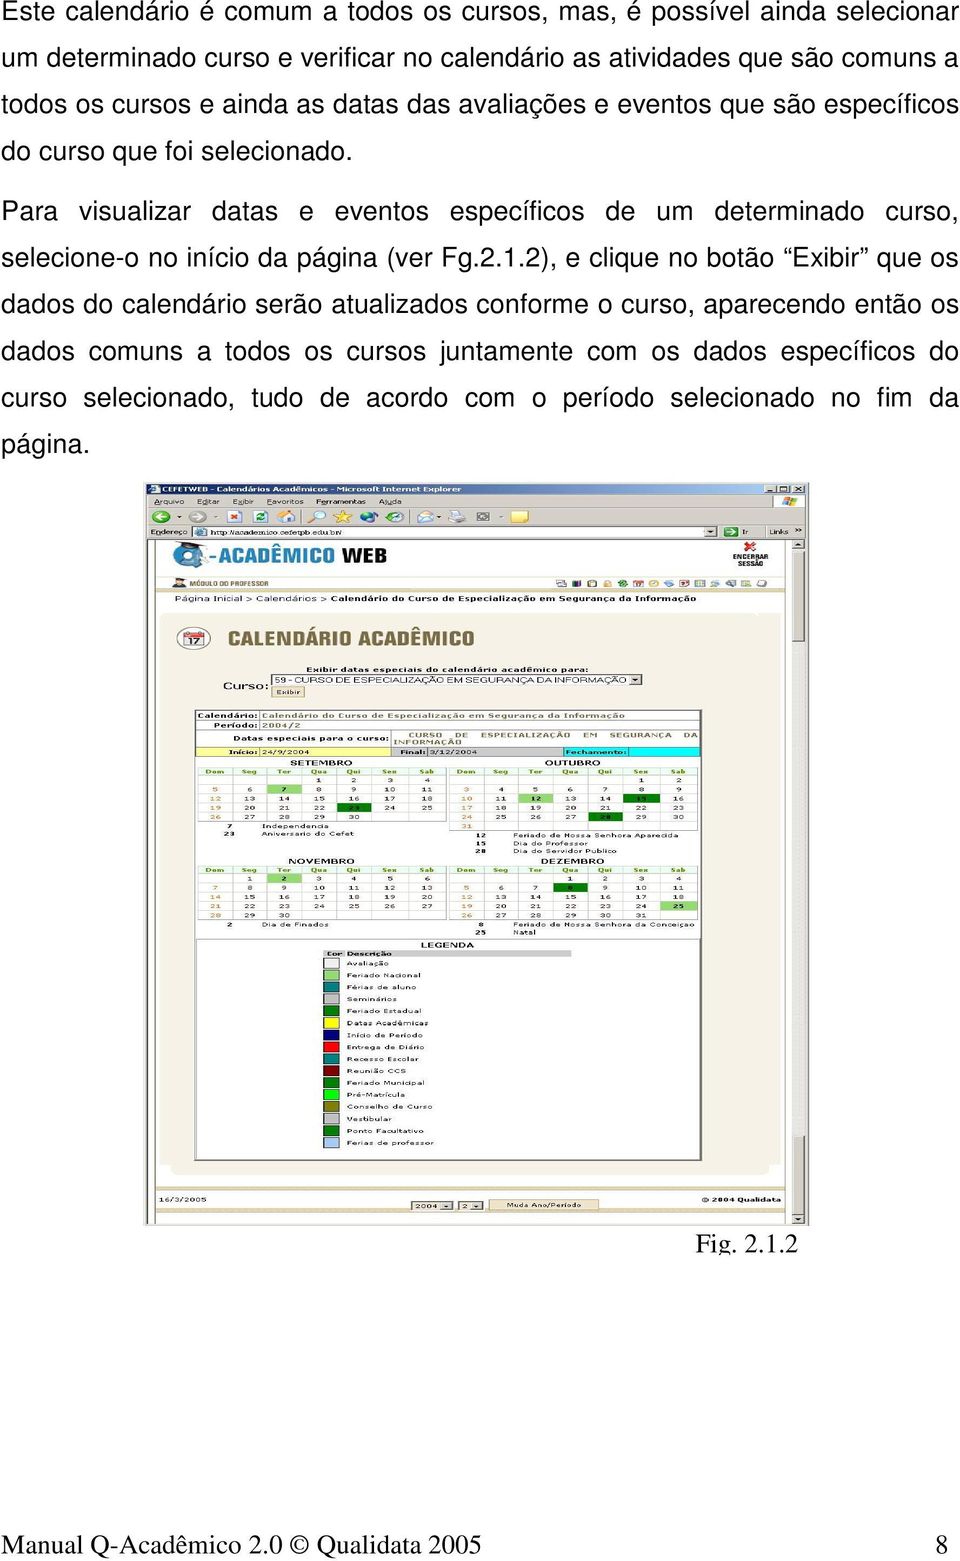 Para visualizar datas e eventos específicos de um determinado curso, selecione-o no início da página (ver Fg.2.1.